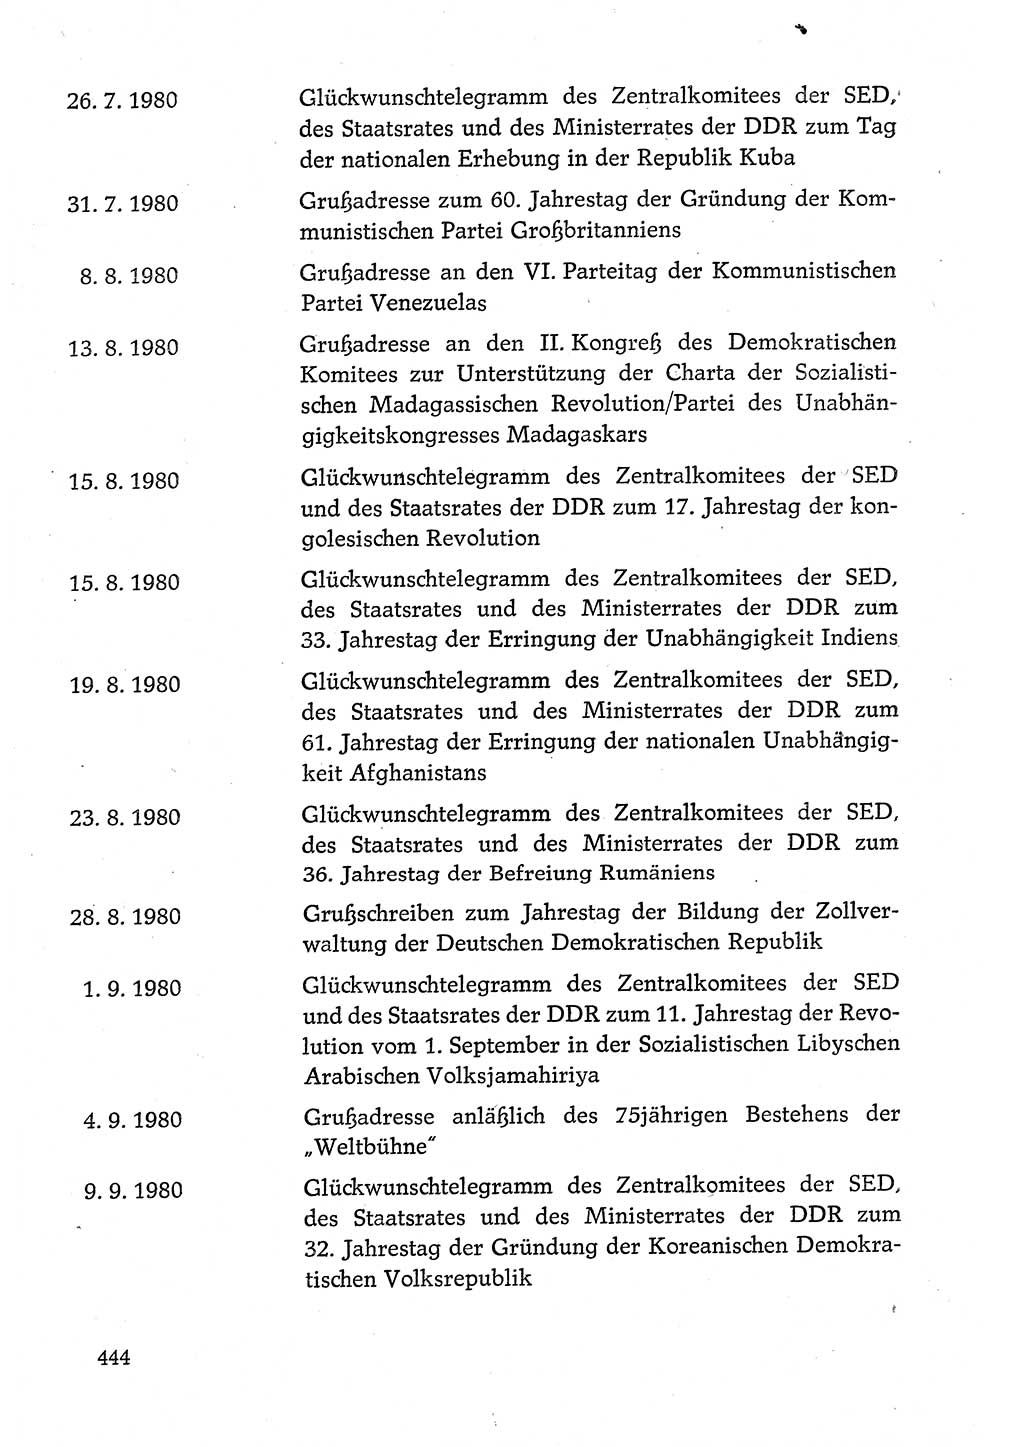 Dokumente der Sozialistischen Einheitspartei Deutschlands (SED) [Deutsche Demokratische Republik (DDR)] 1980-1981, Seite 444 (Dok. SED DDR 1980-1981, S. 444)